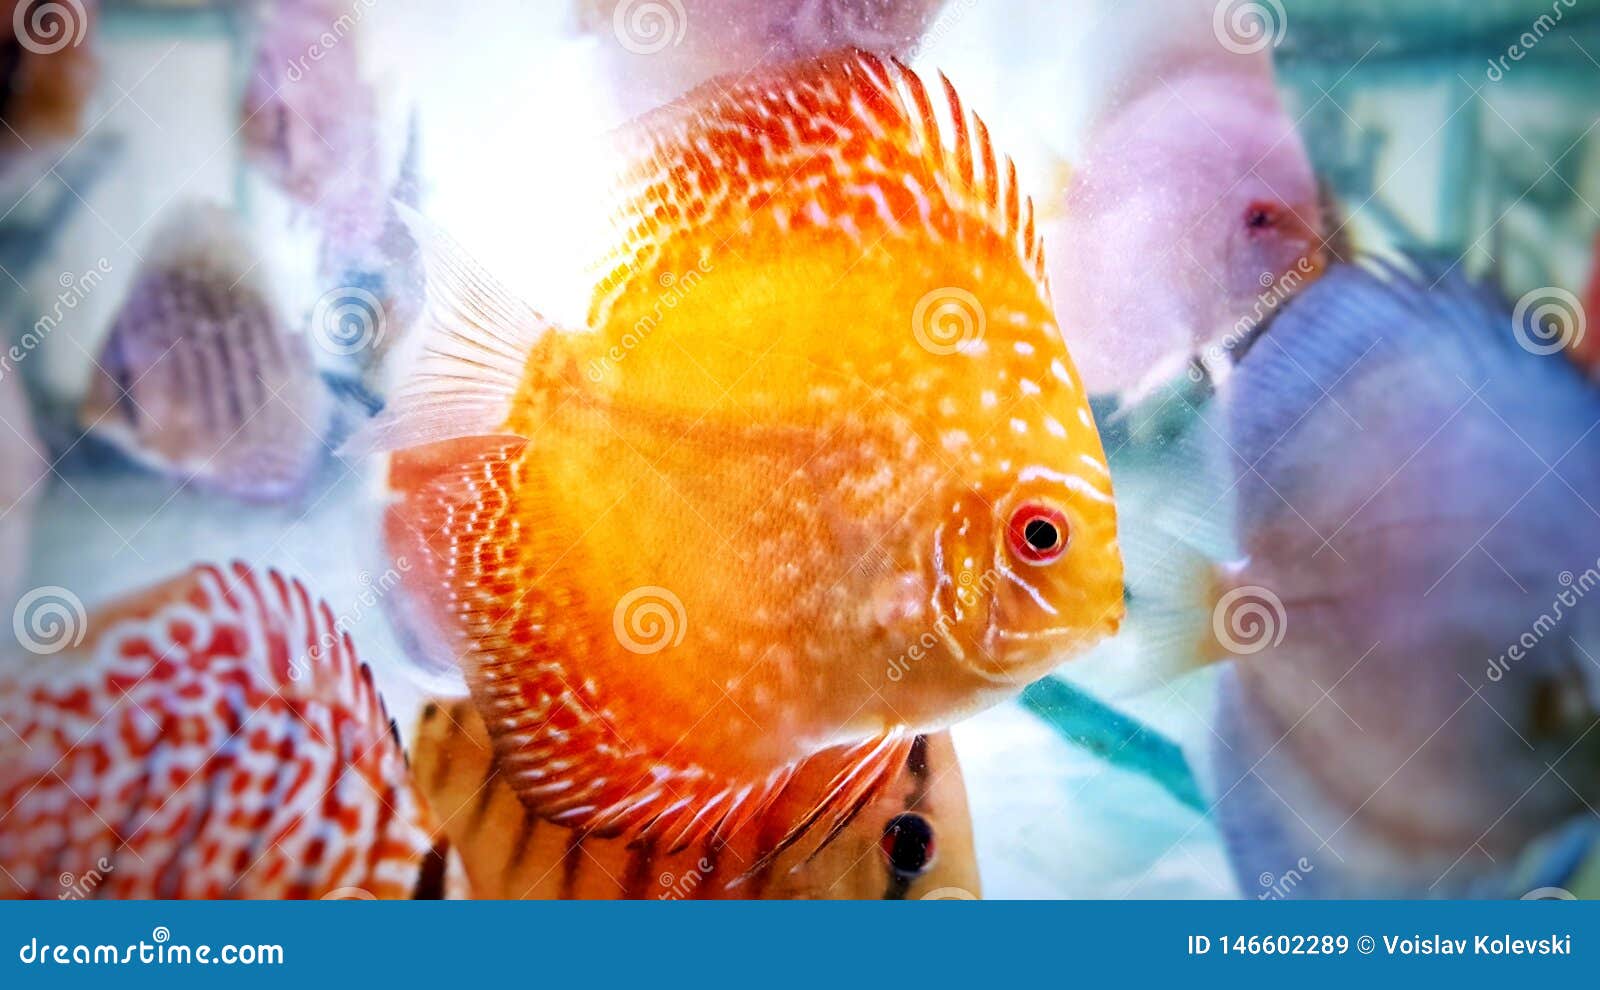 Discus Fish in Fresh Water Aquarium Stock Image - Image of cichlid, fish:  146602289